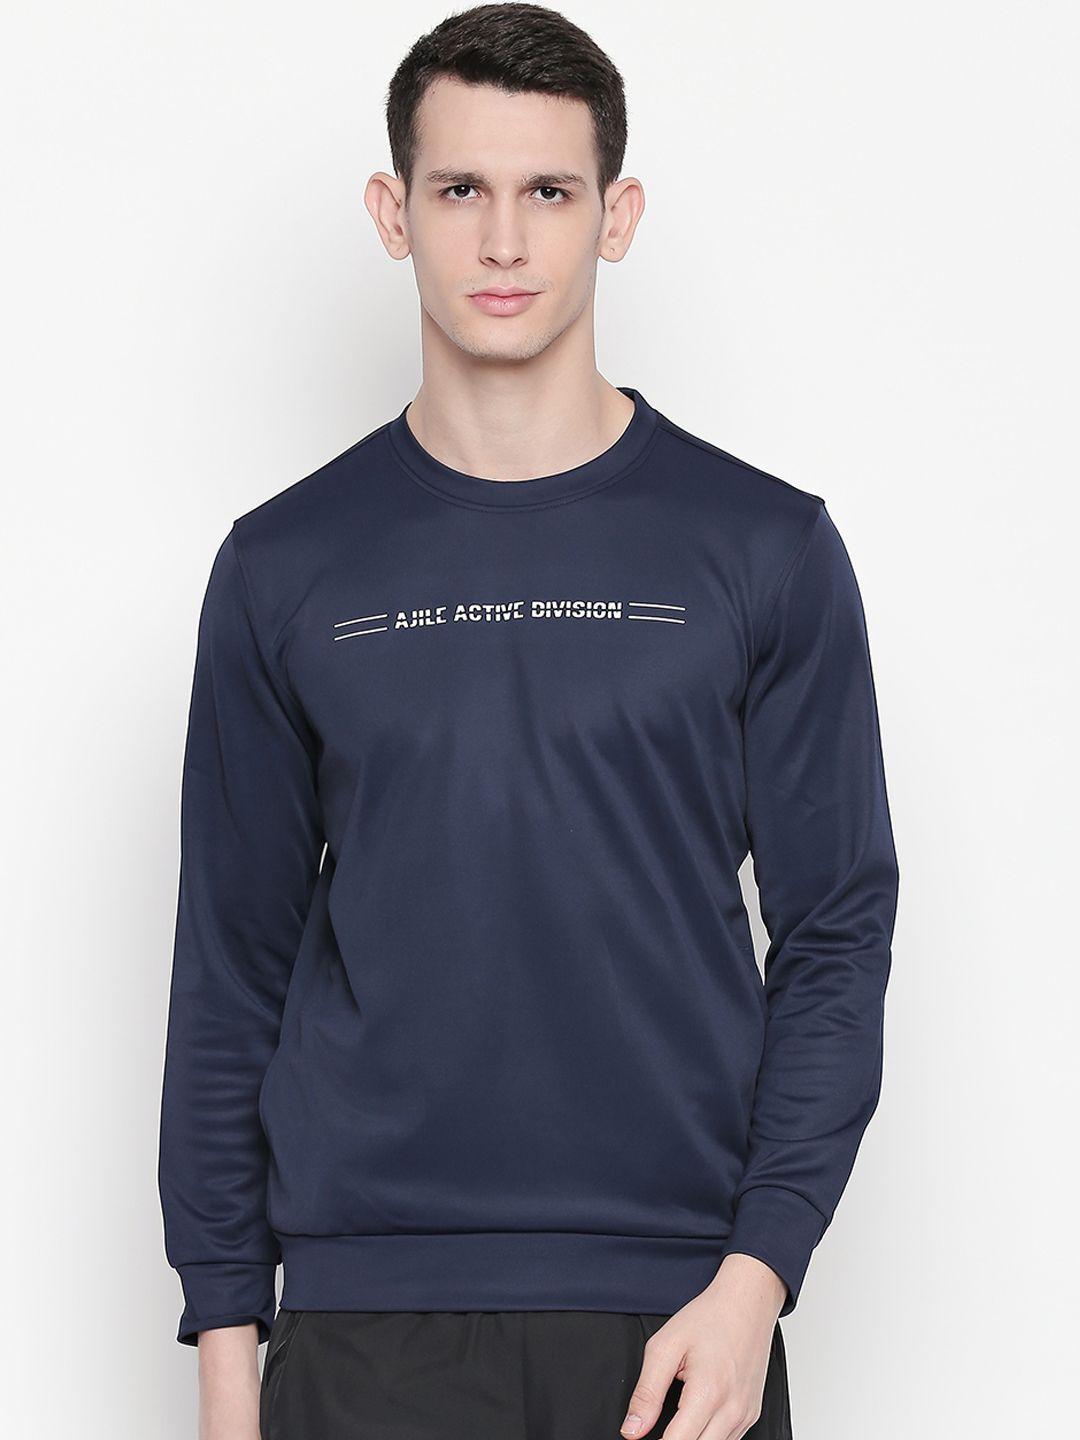 ajile by pantaloons men navy blue printed sweatshirt